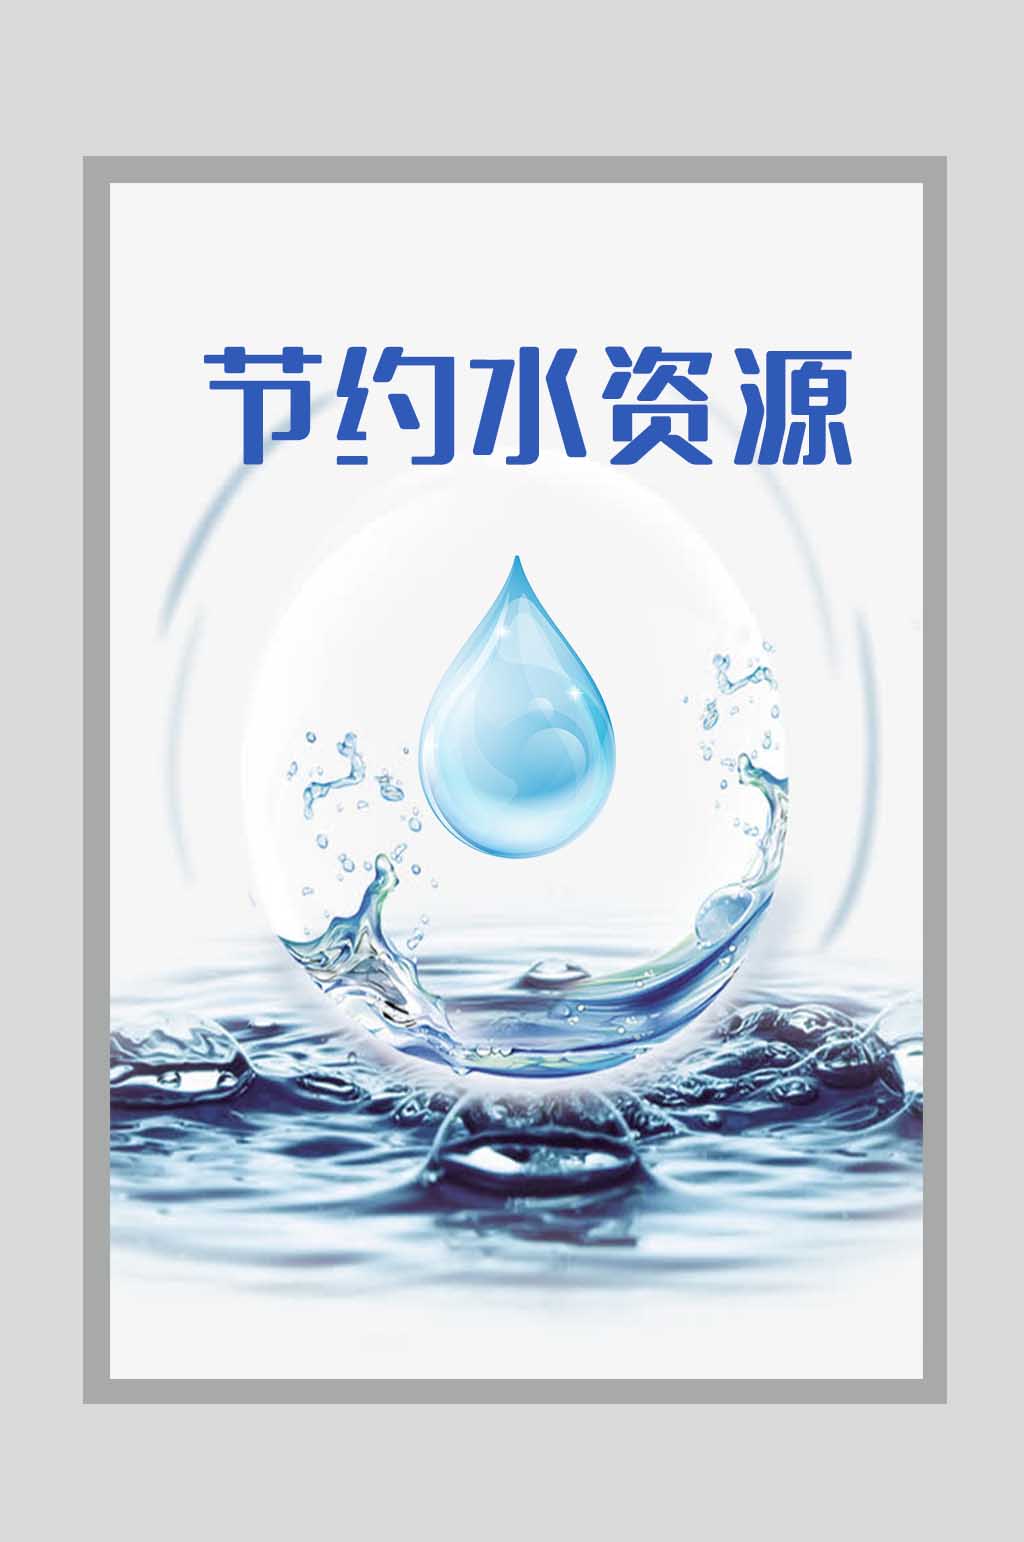 宣传海报节约资源保护水资源公益宣传海报展架节约用水共建家园宣传